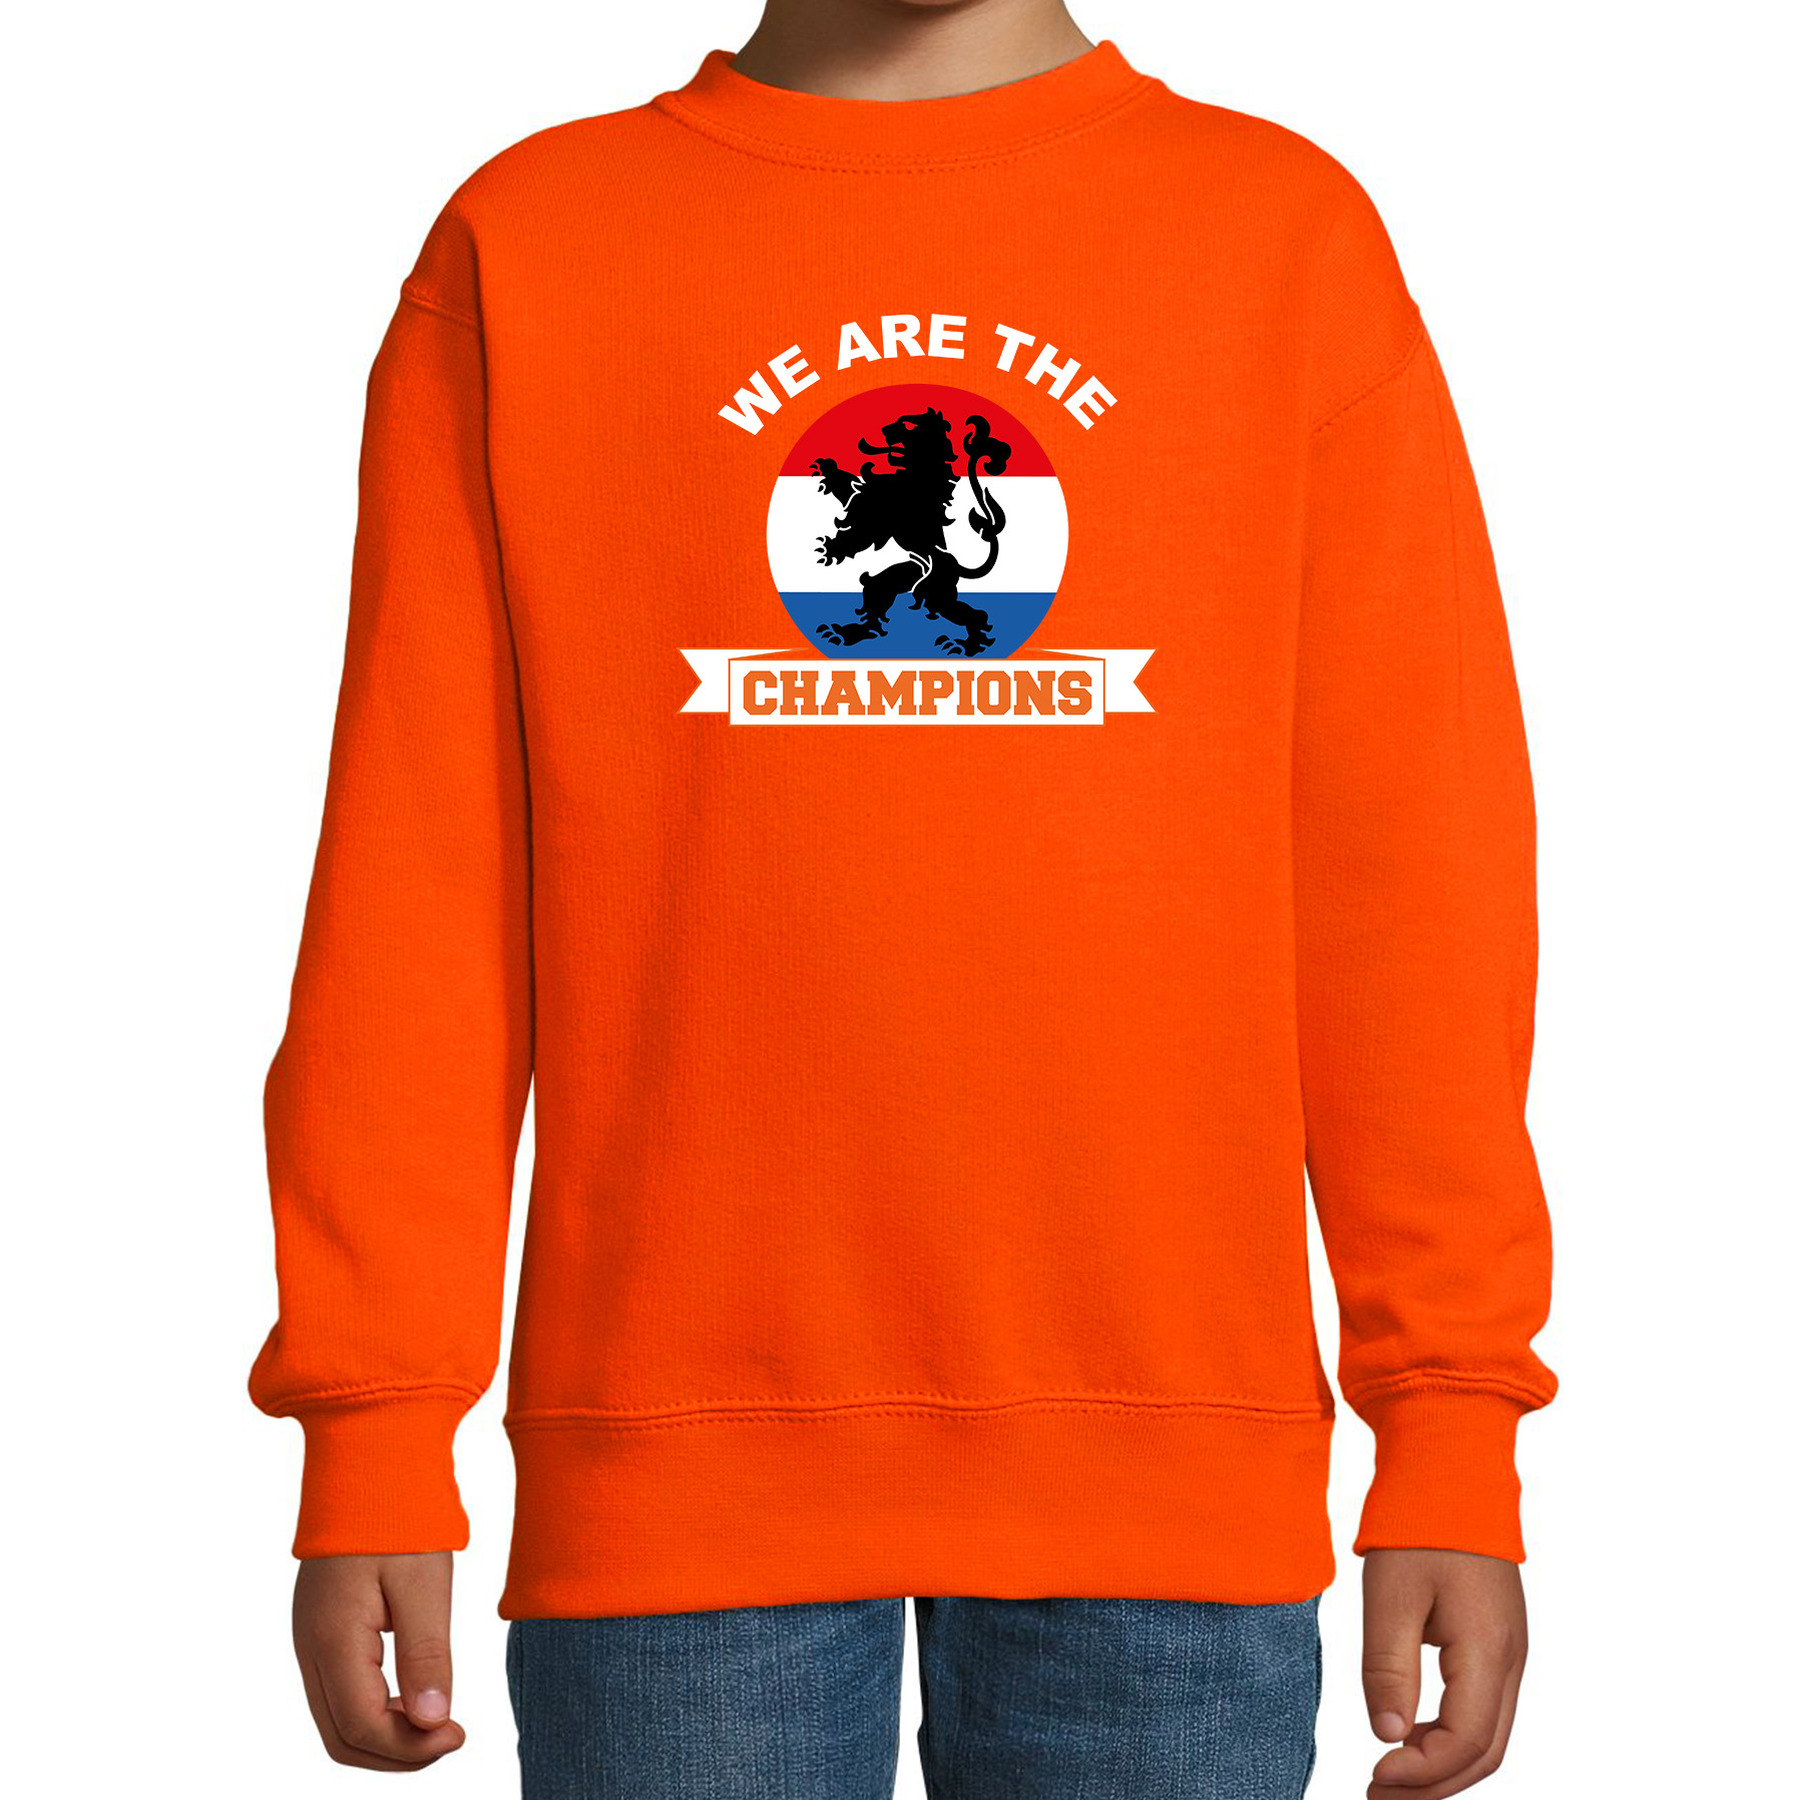 We are the champions oranje sweater-trui Holland-Nederland supporter EK- WK voor kinderen